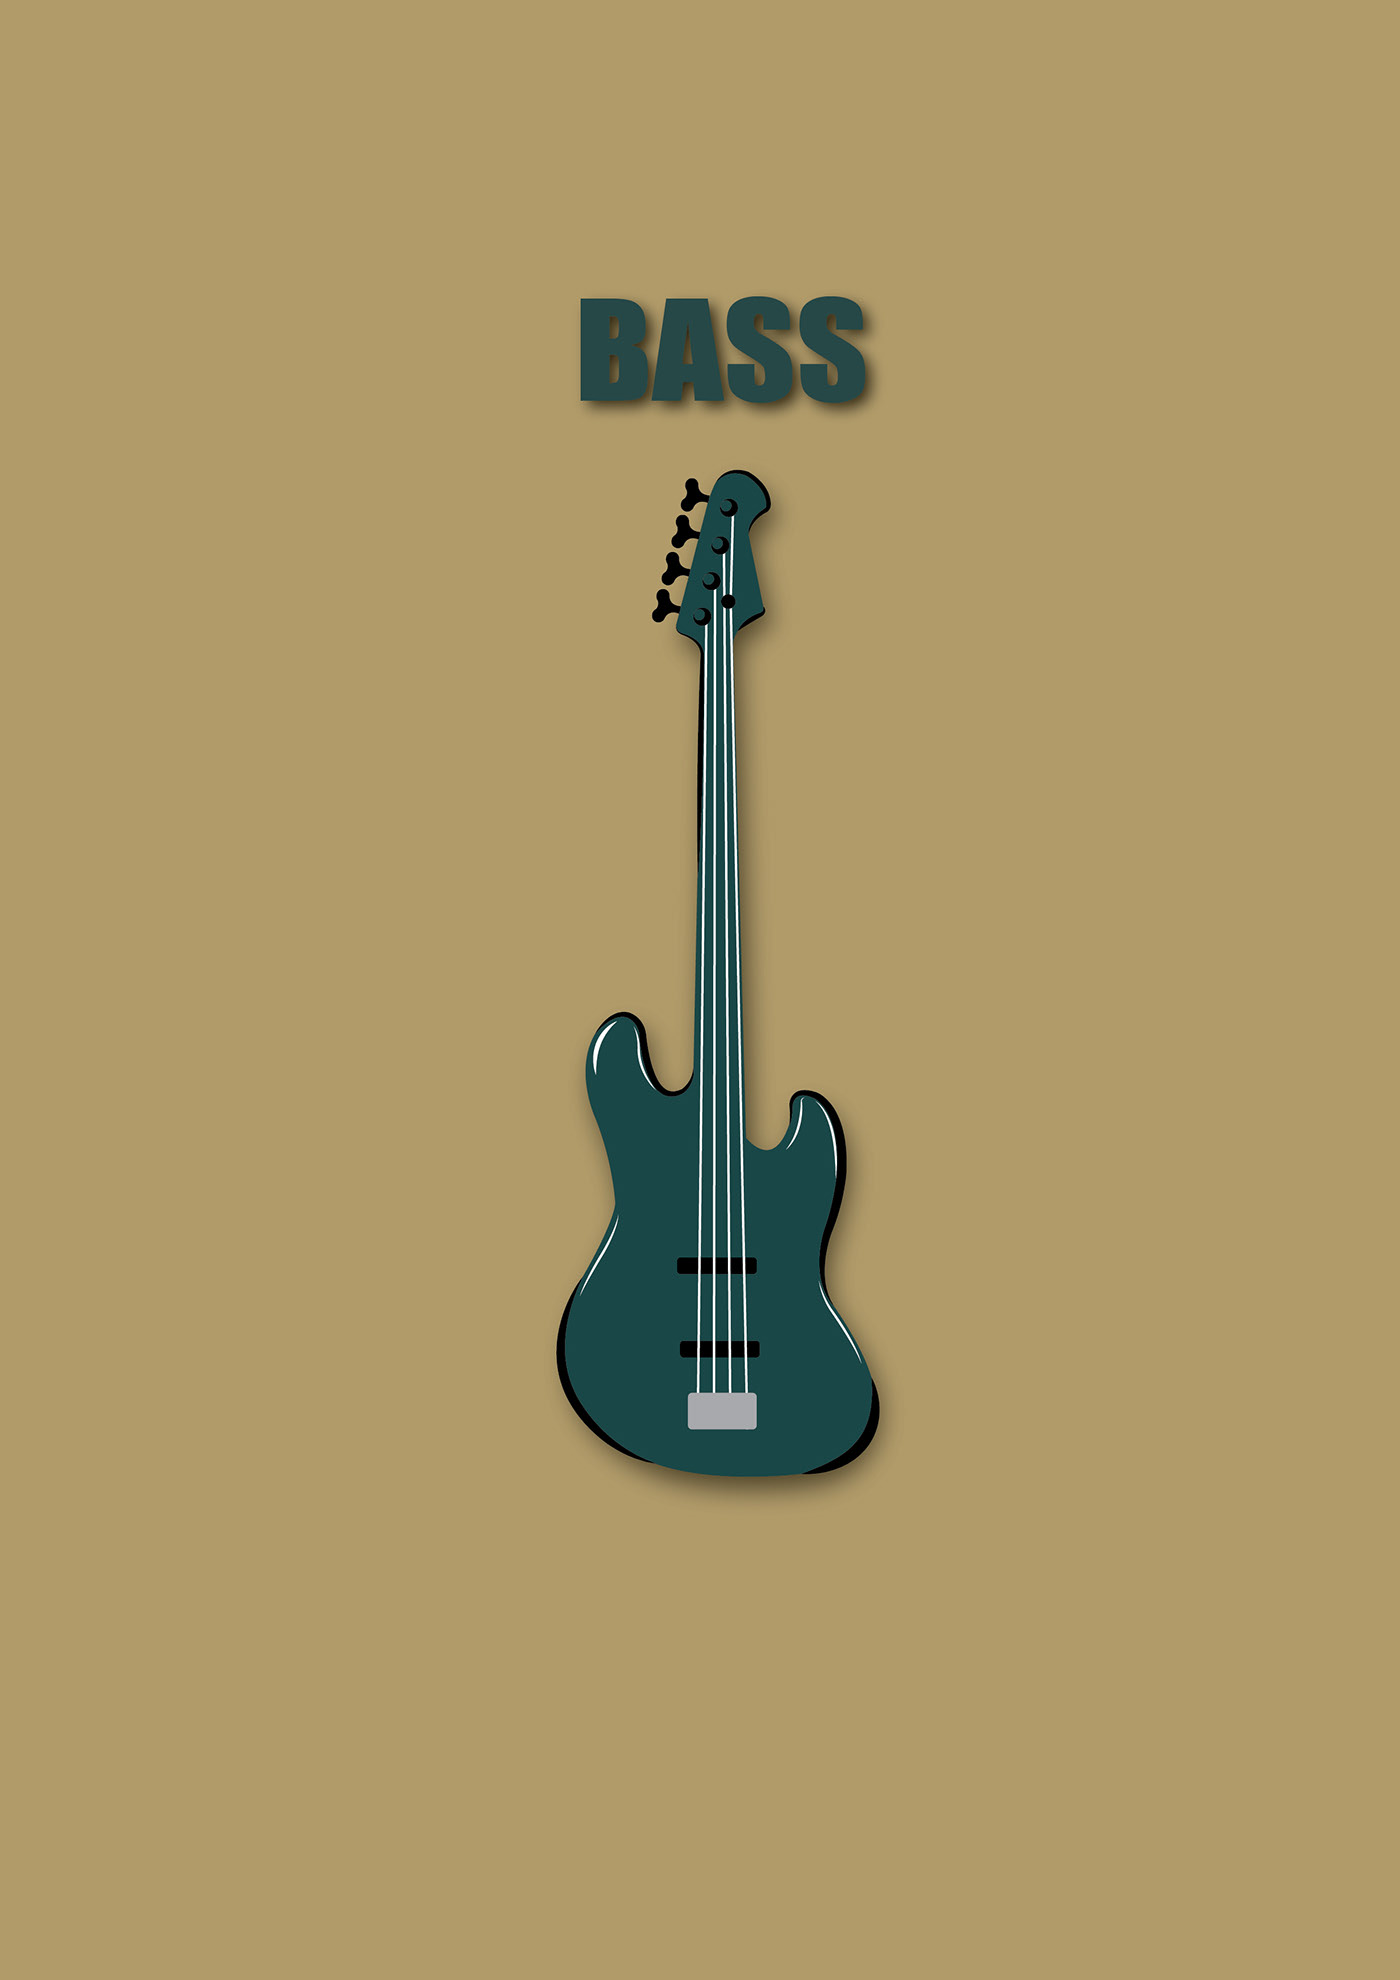 band bass bass guitar music